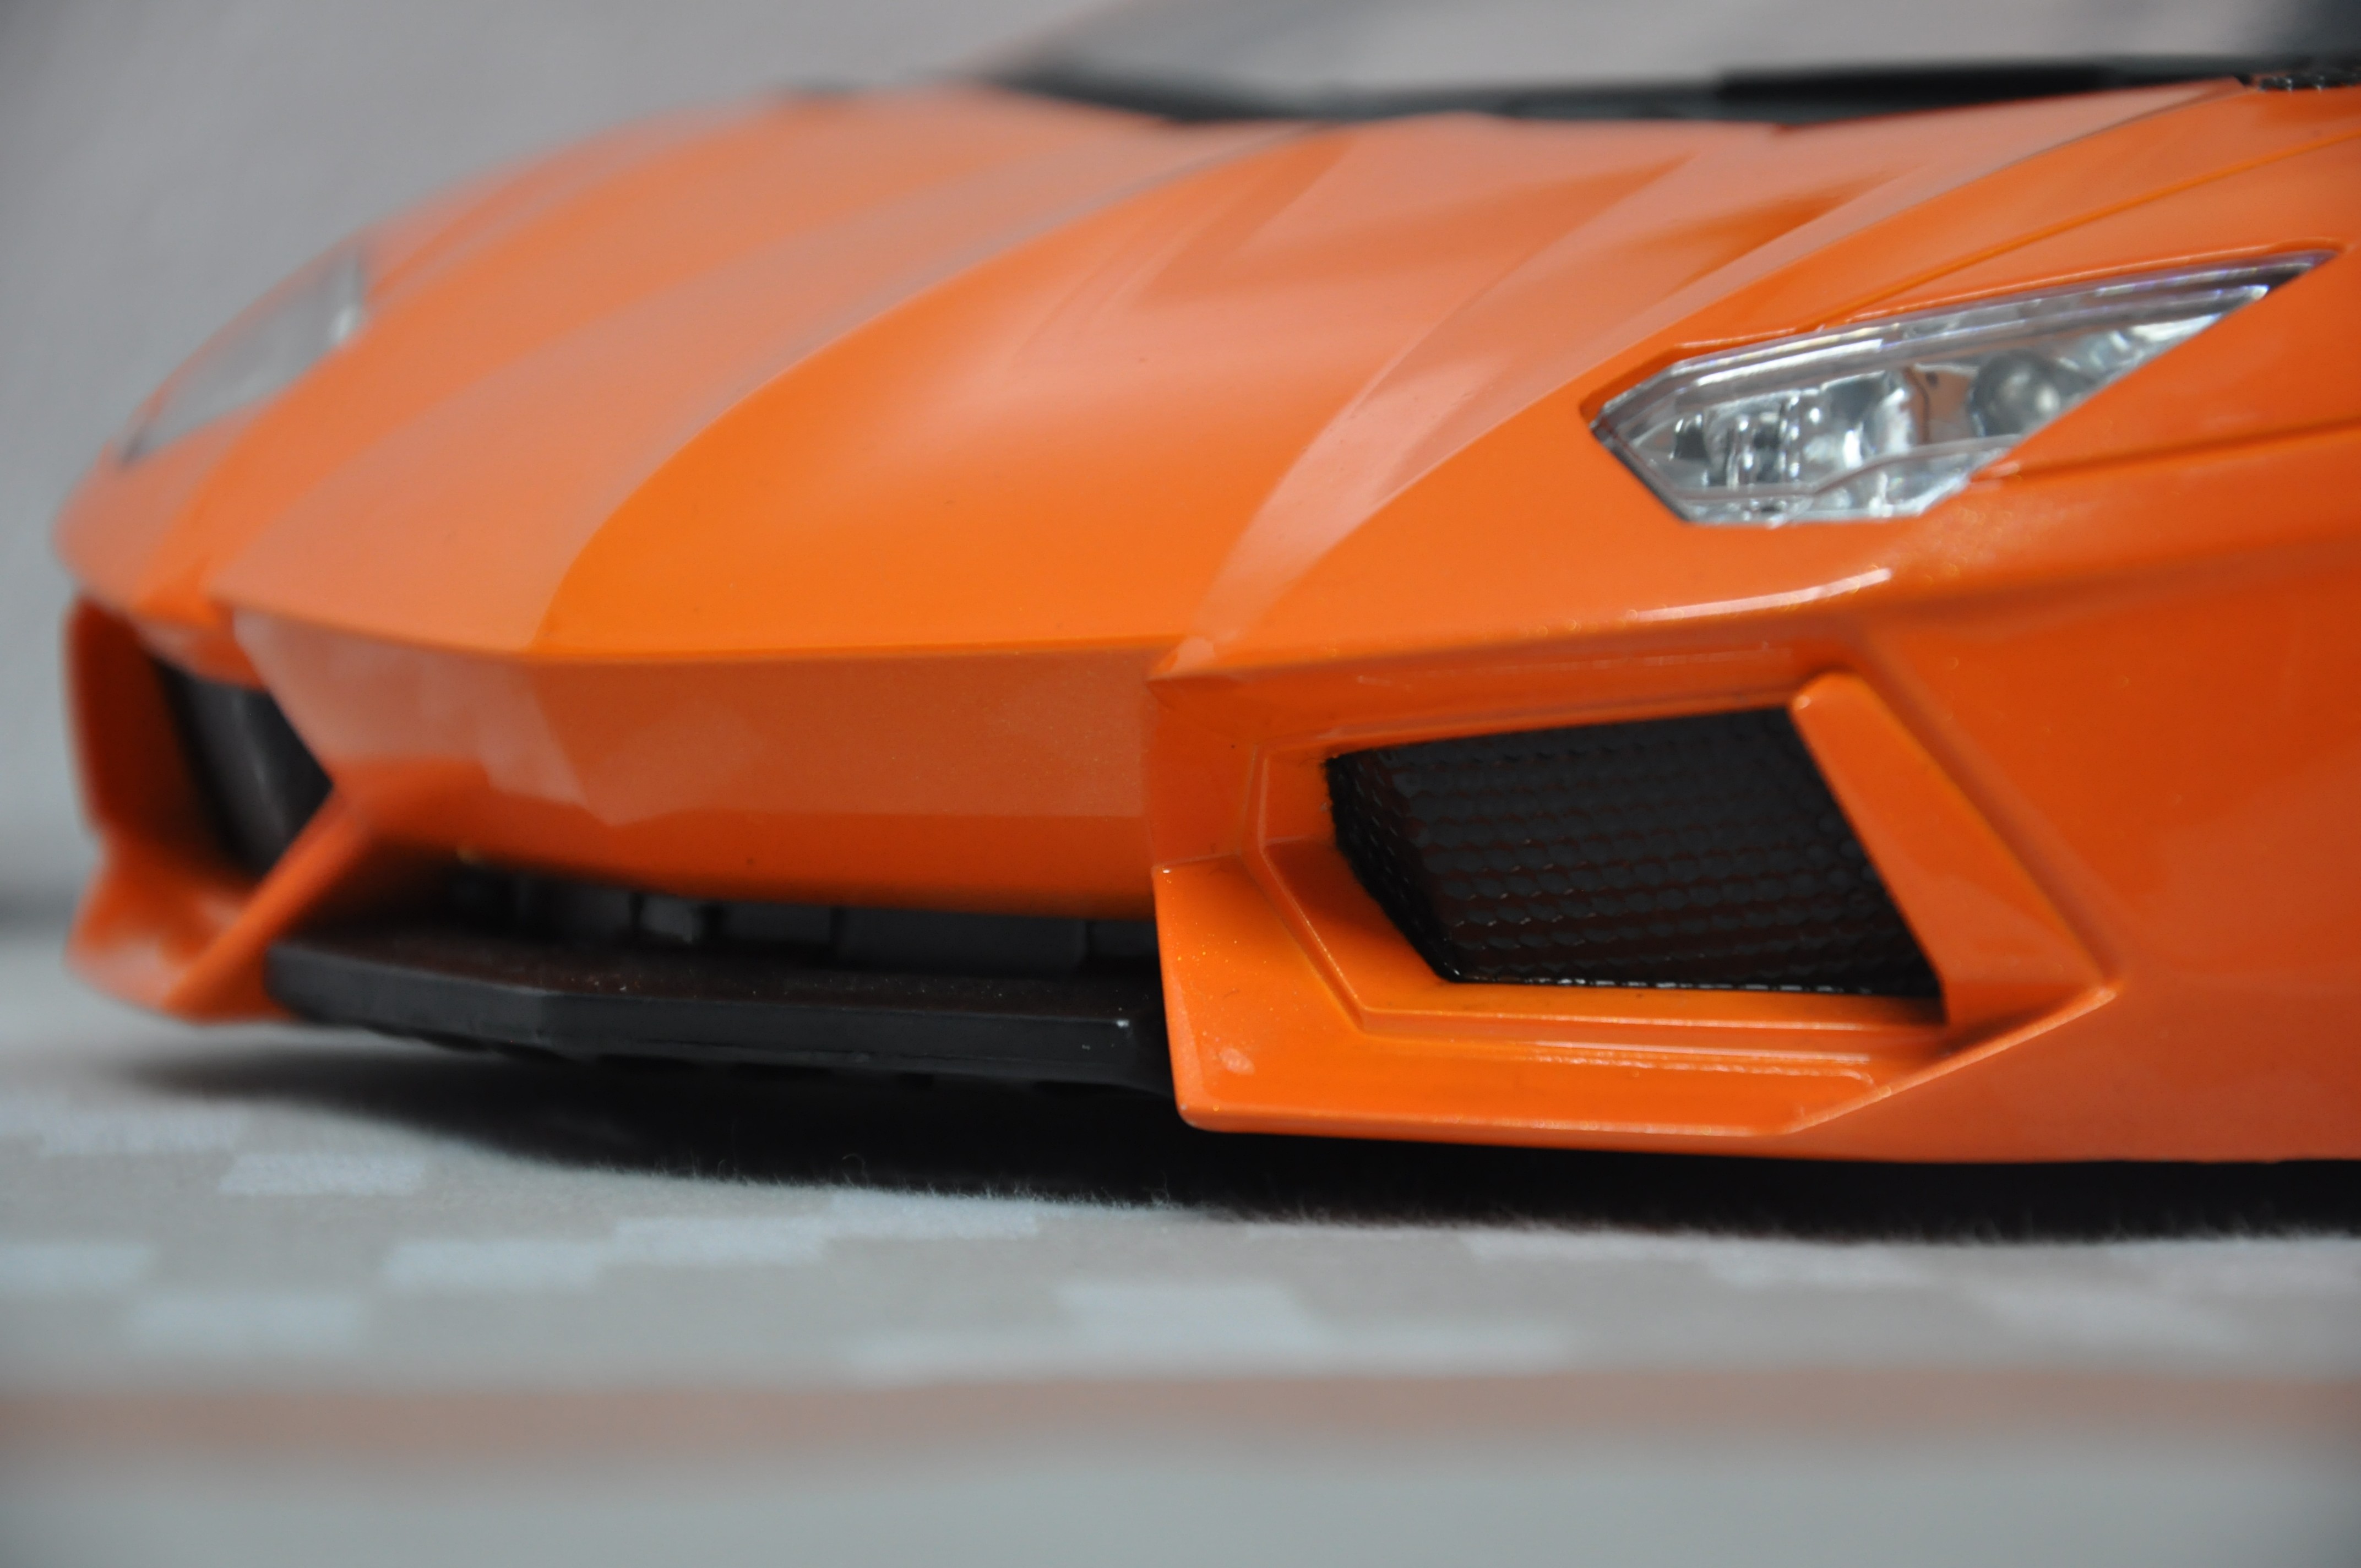 General 4288x2848 toys car orange cars Lamborghini vehicle